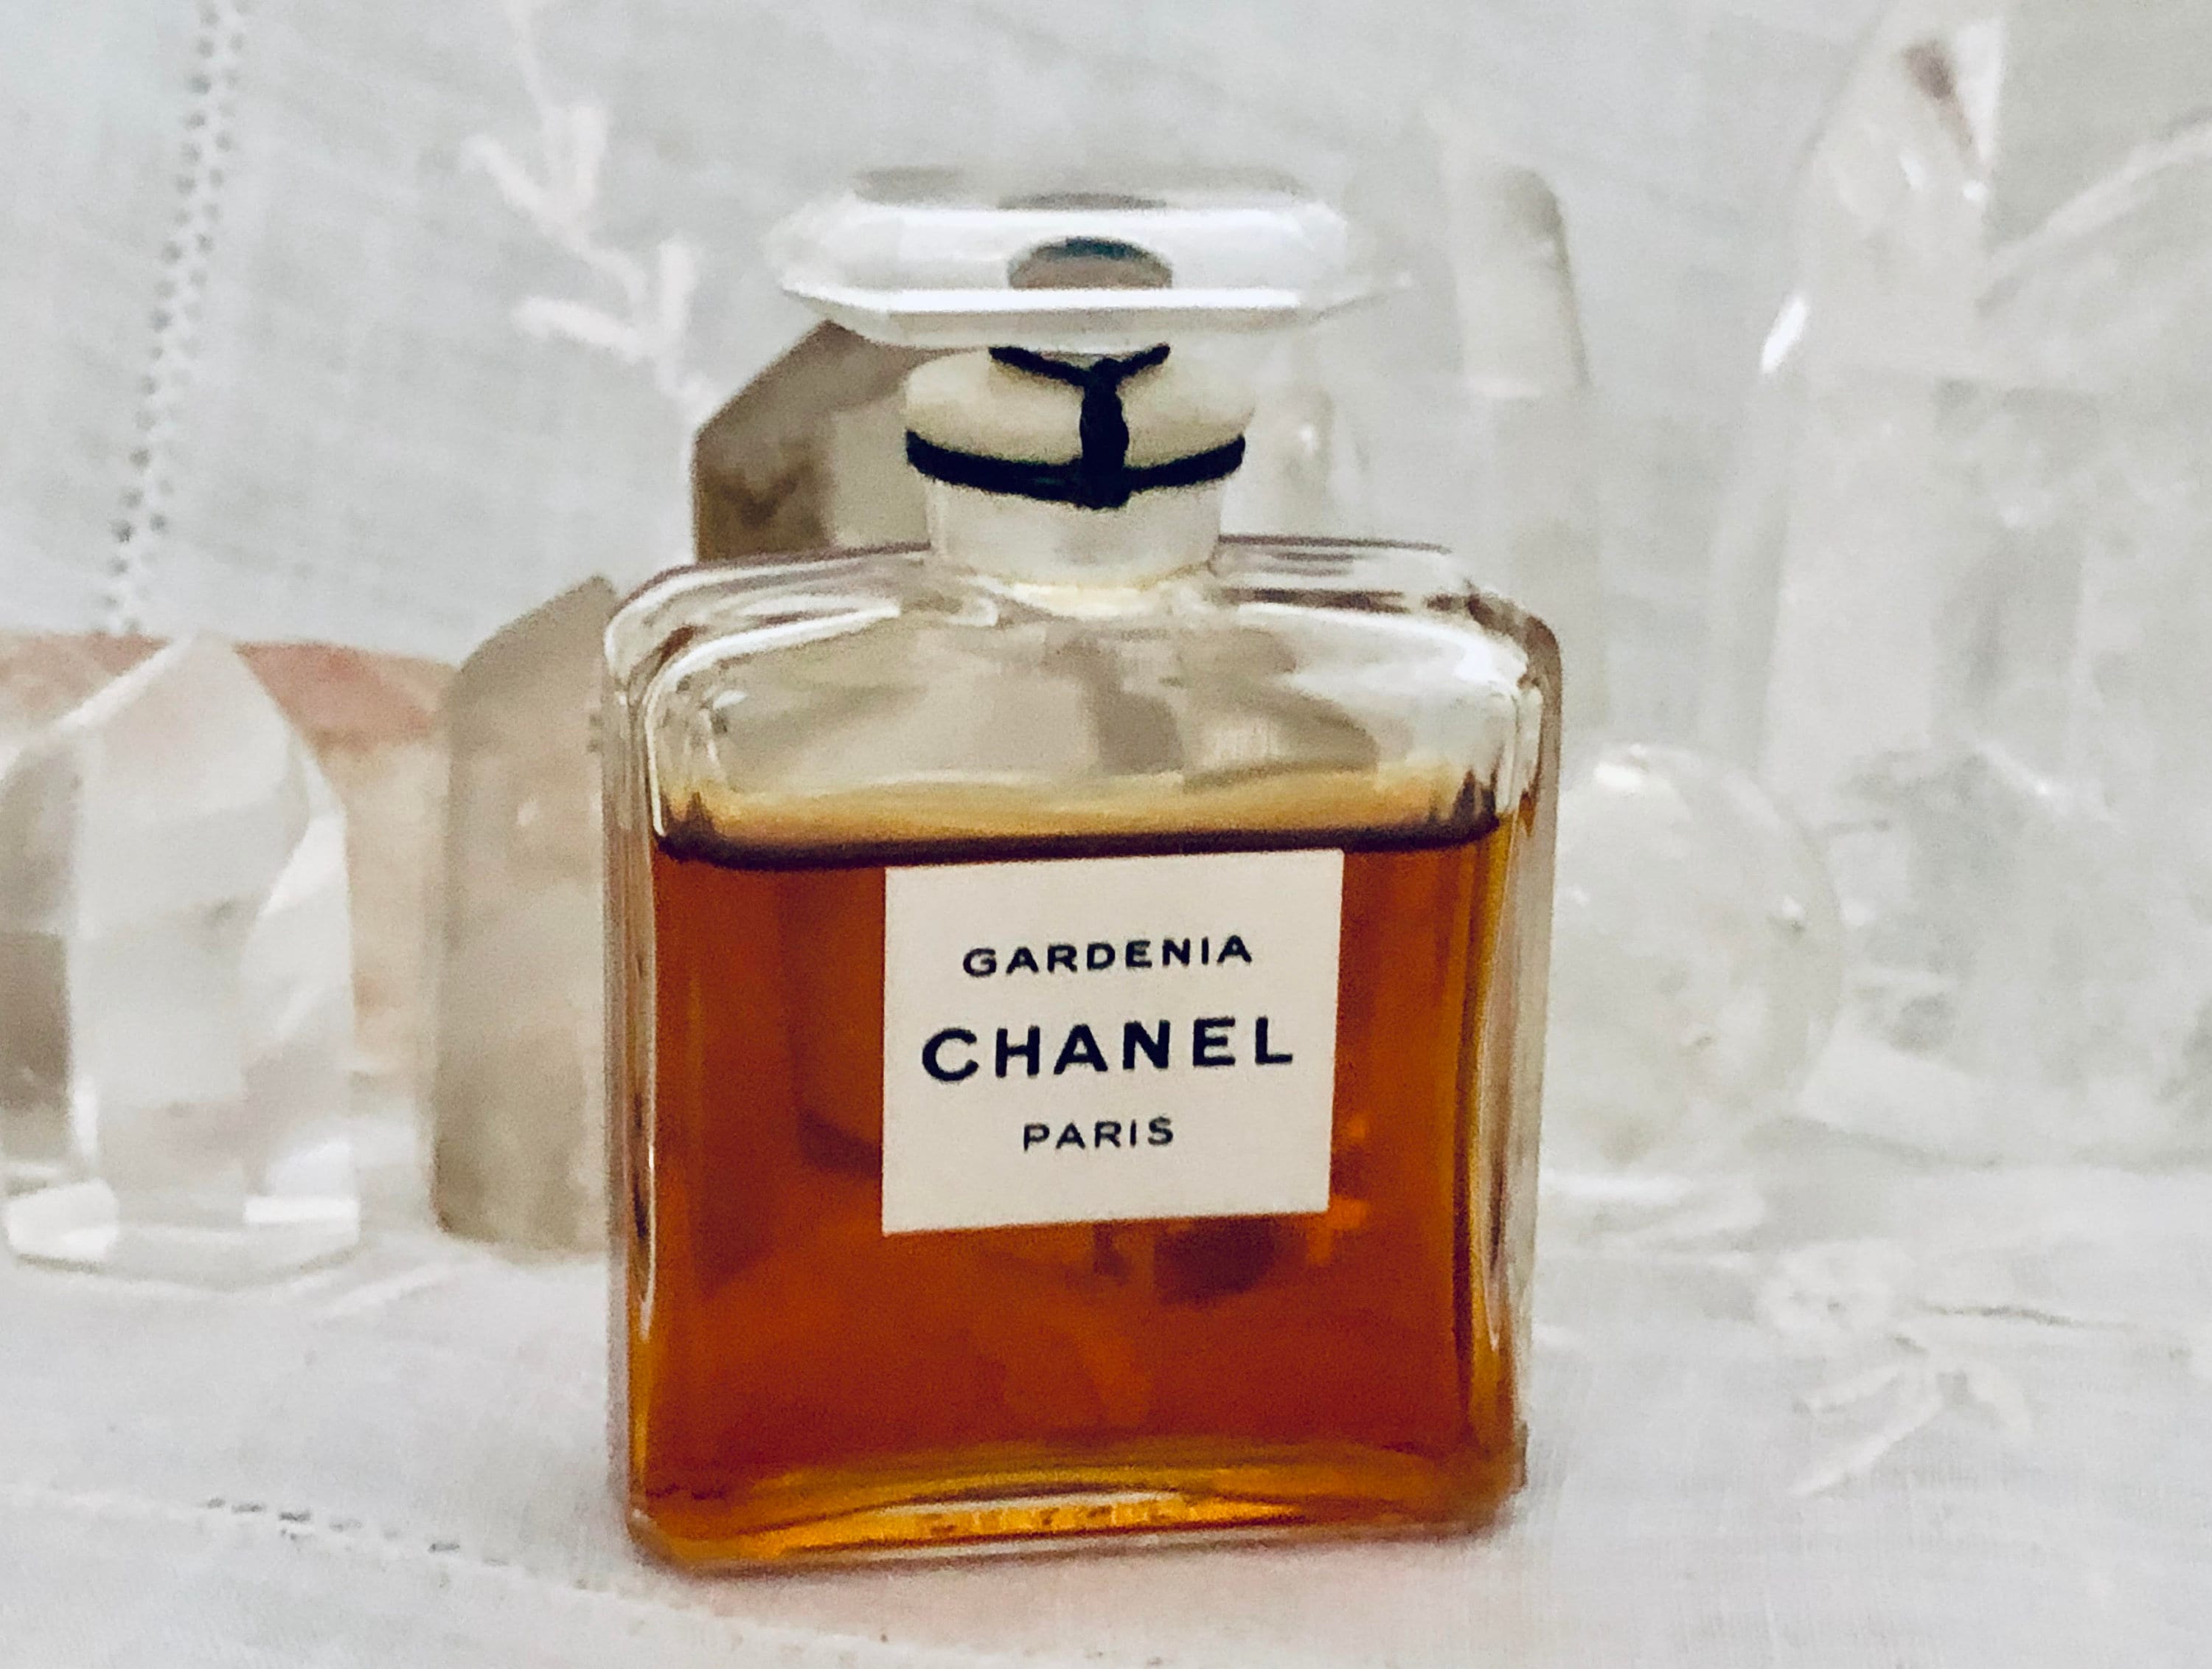 Vintage Chanel Paris No 5 Extrait Eau de Perfume 28ml